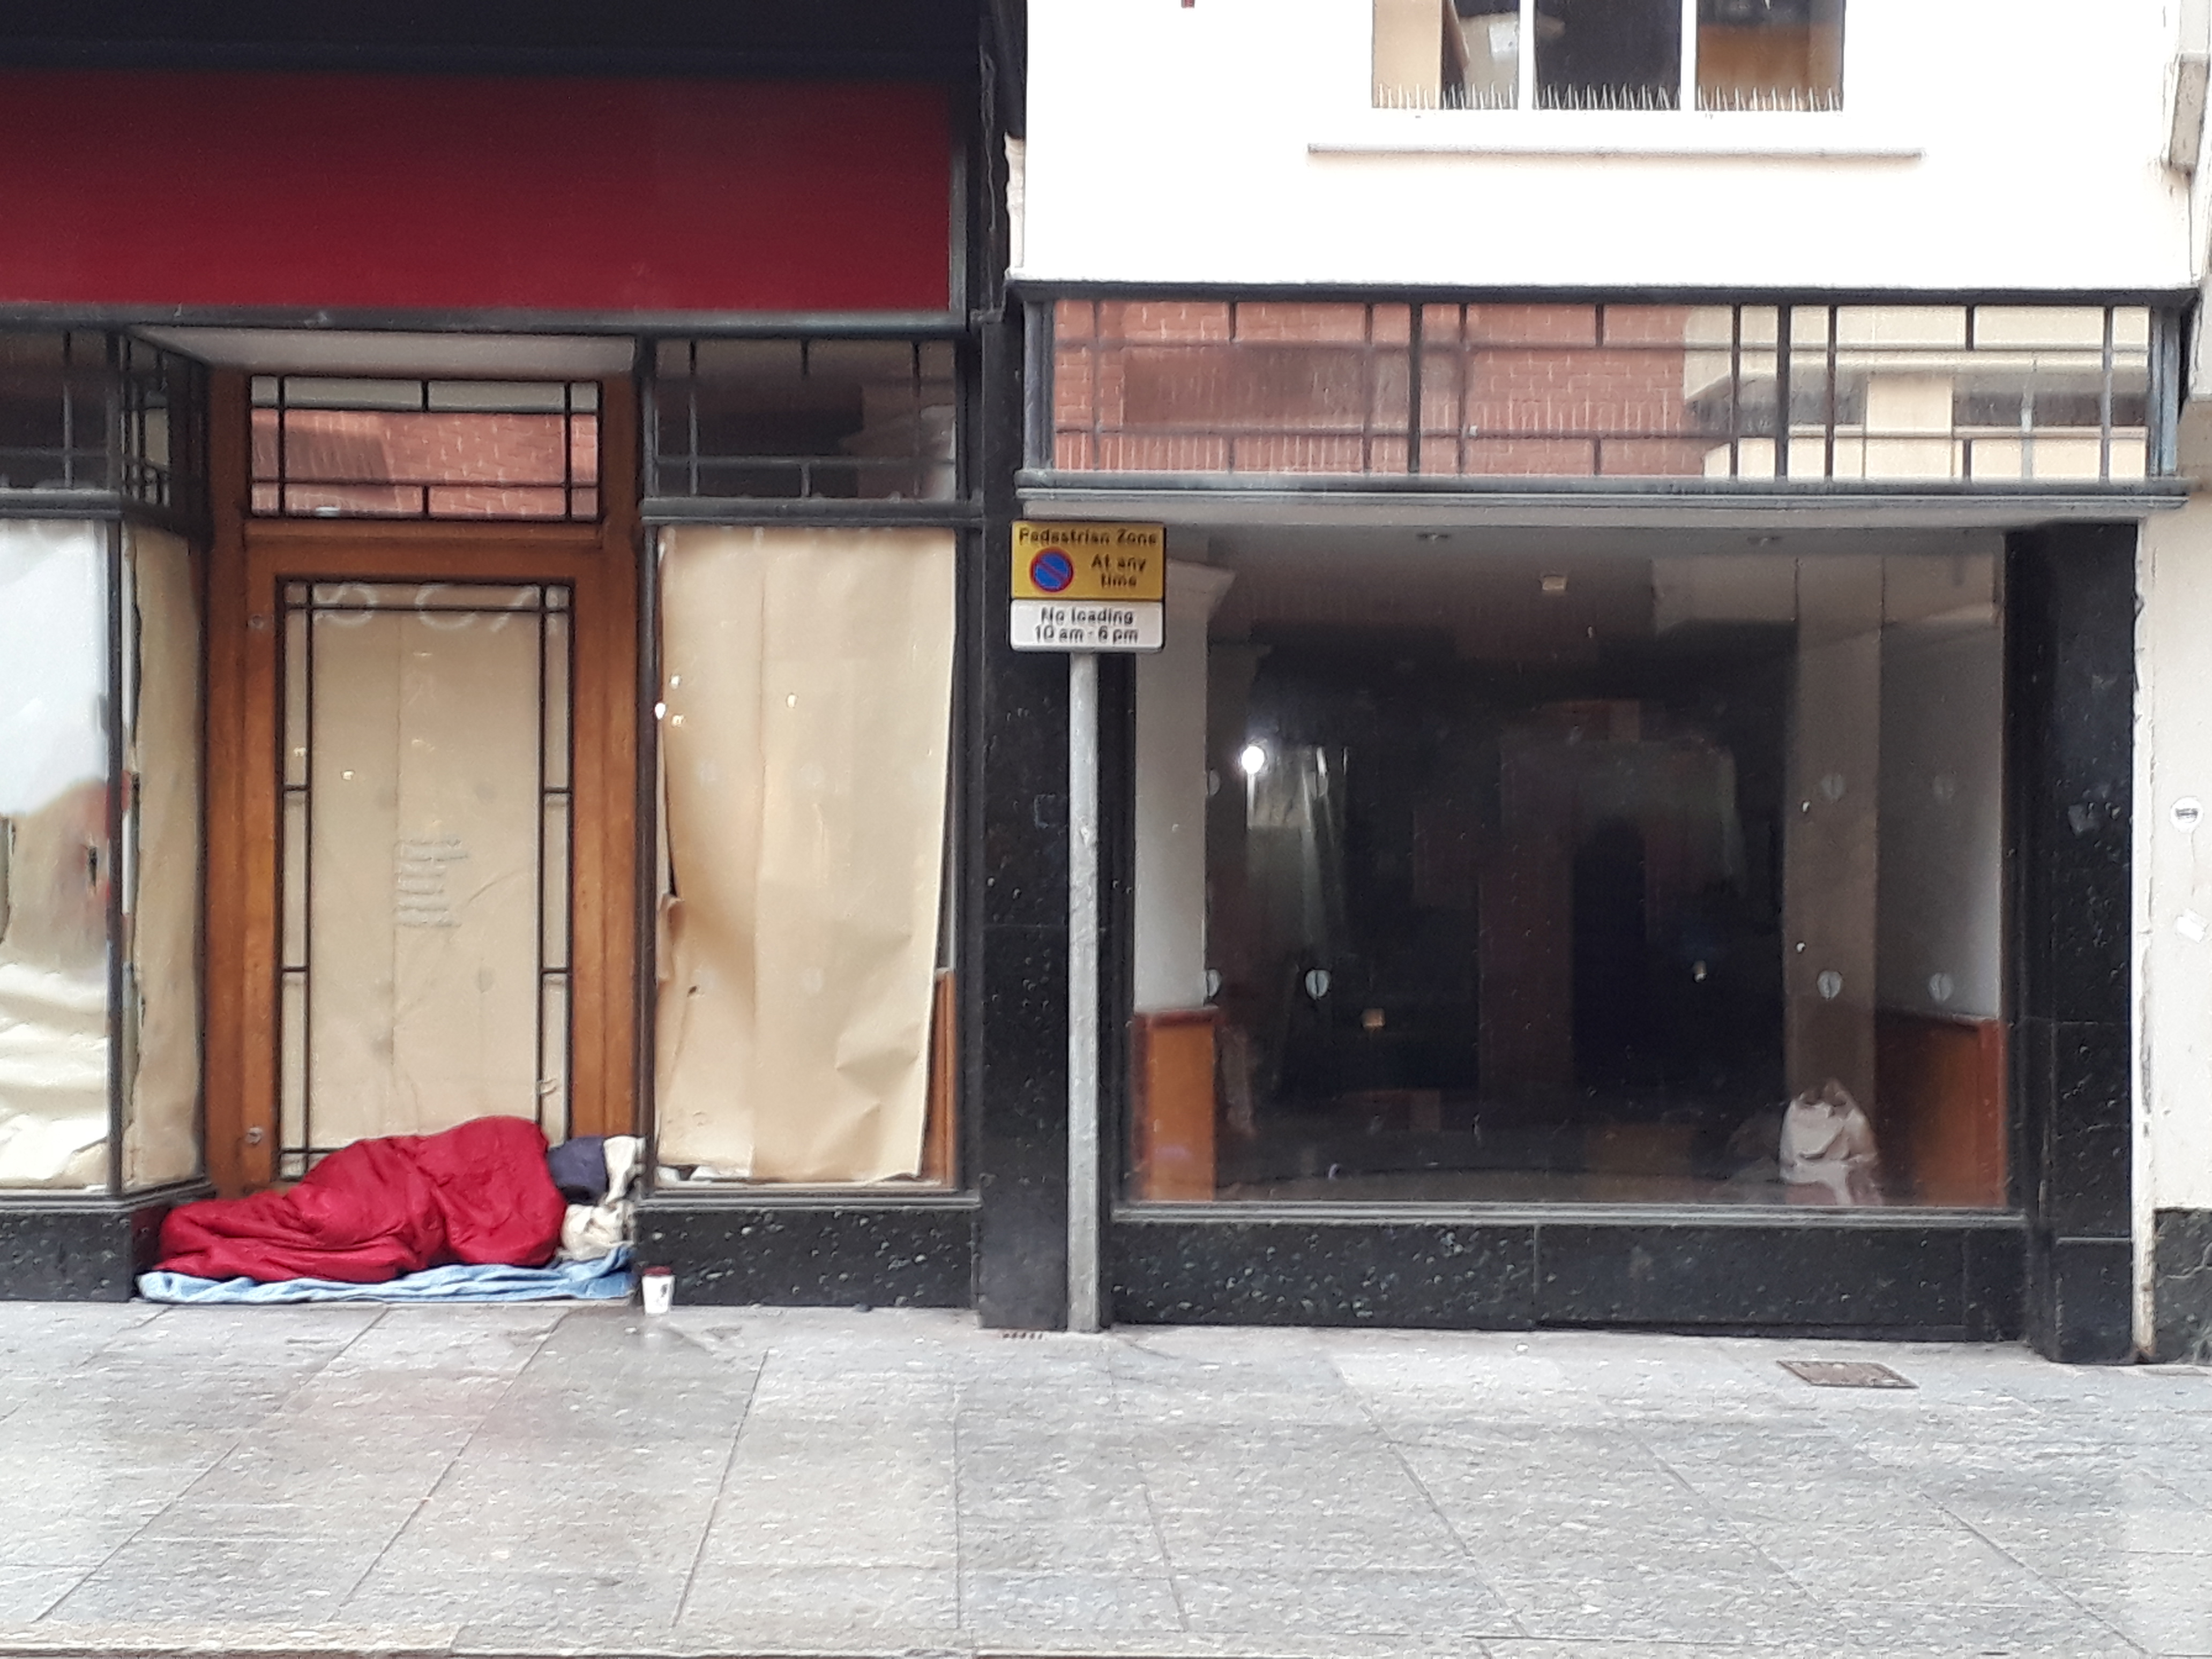 Homeless man in shop doorway